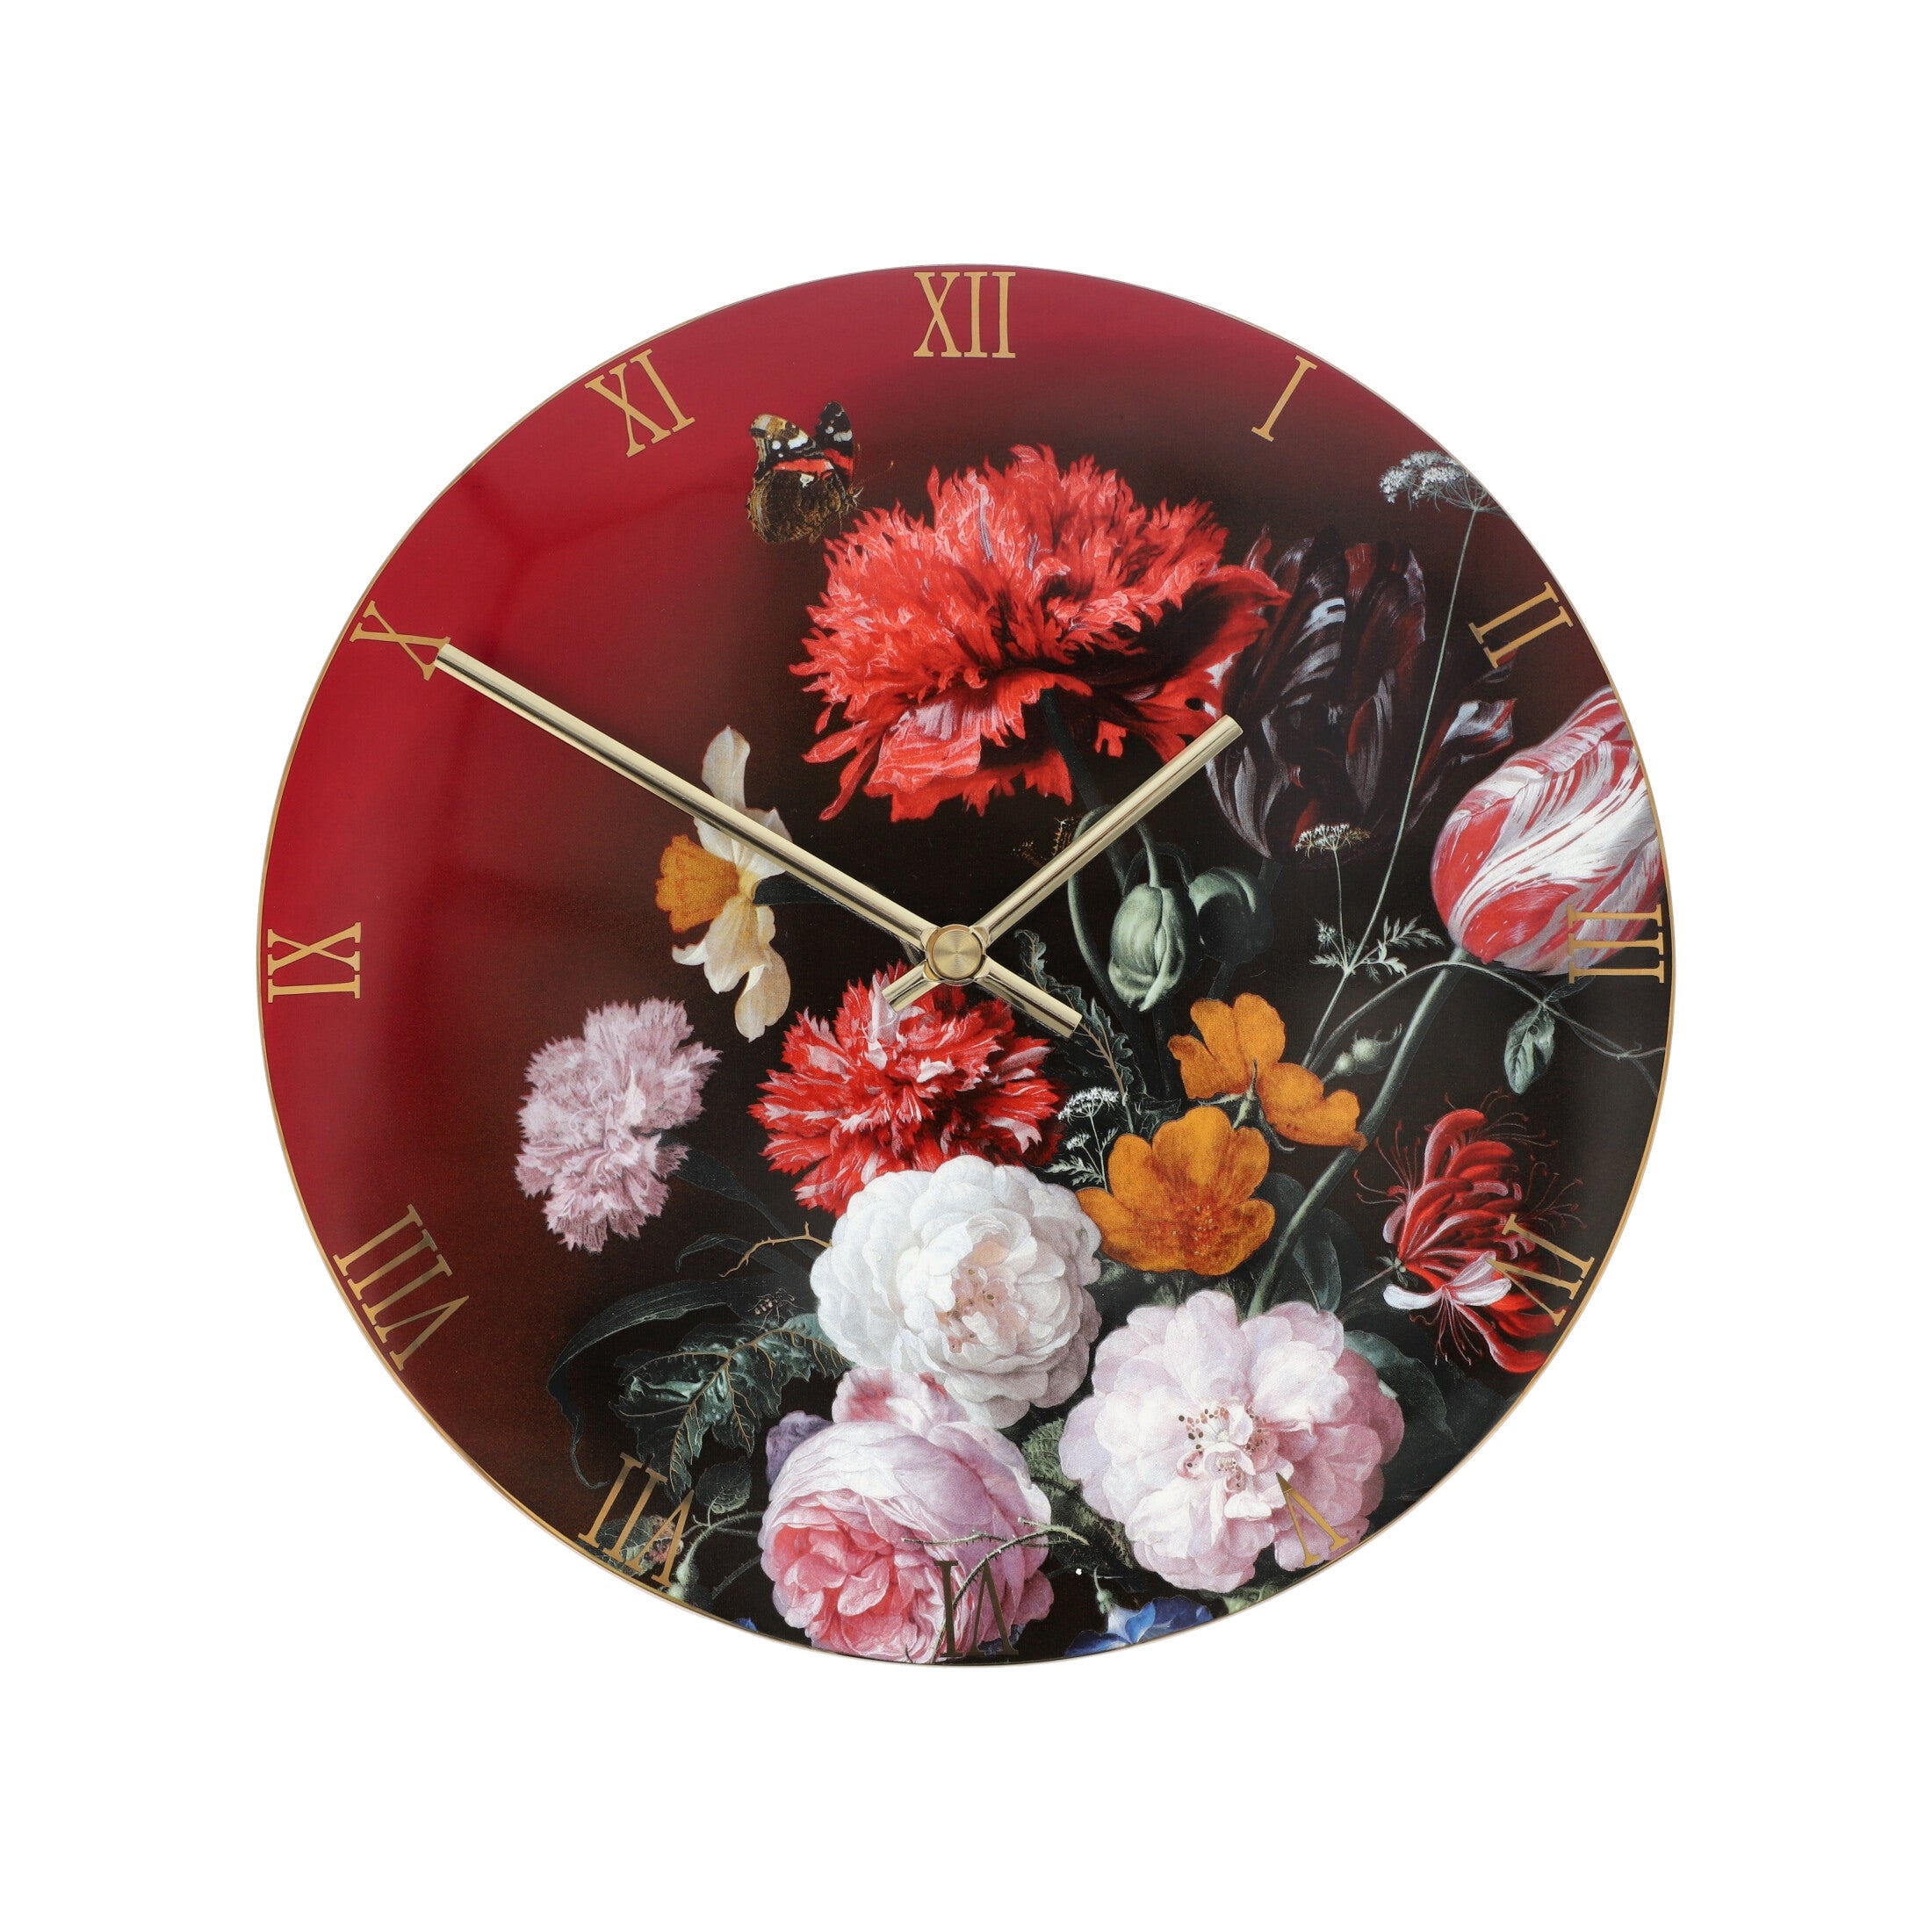 31cm De GOEBEL Vase Artis - | Shiamas – | Jan Heem Davidsz in 時鐘D Orbis Flowers Exclusivités